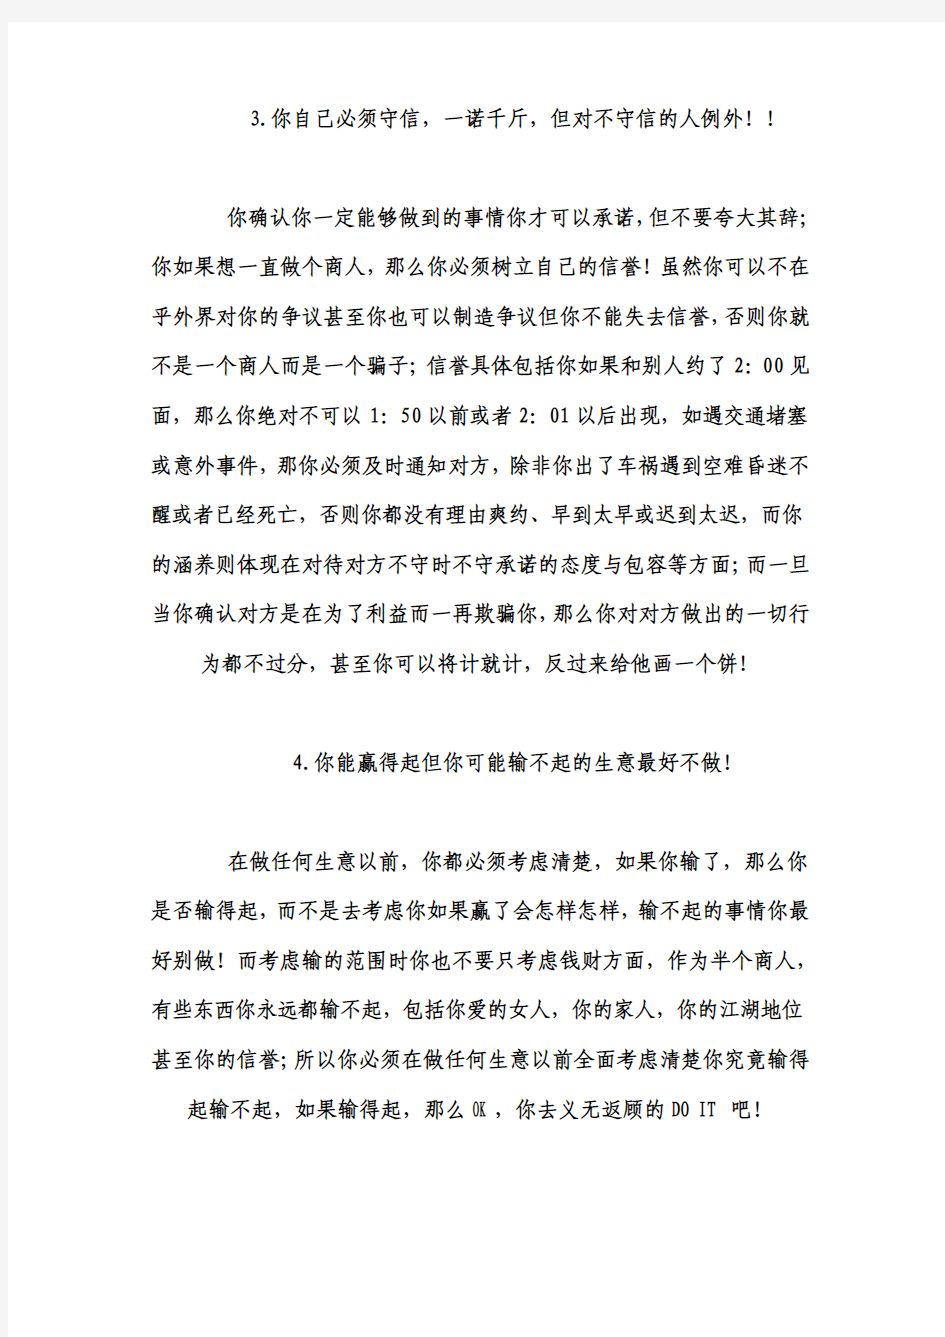 一位身价过亿的温州商人朋友醉酒后说出在中国做大事的22条真言